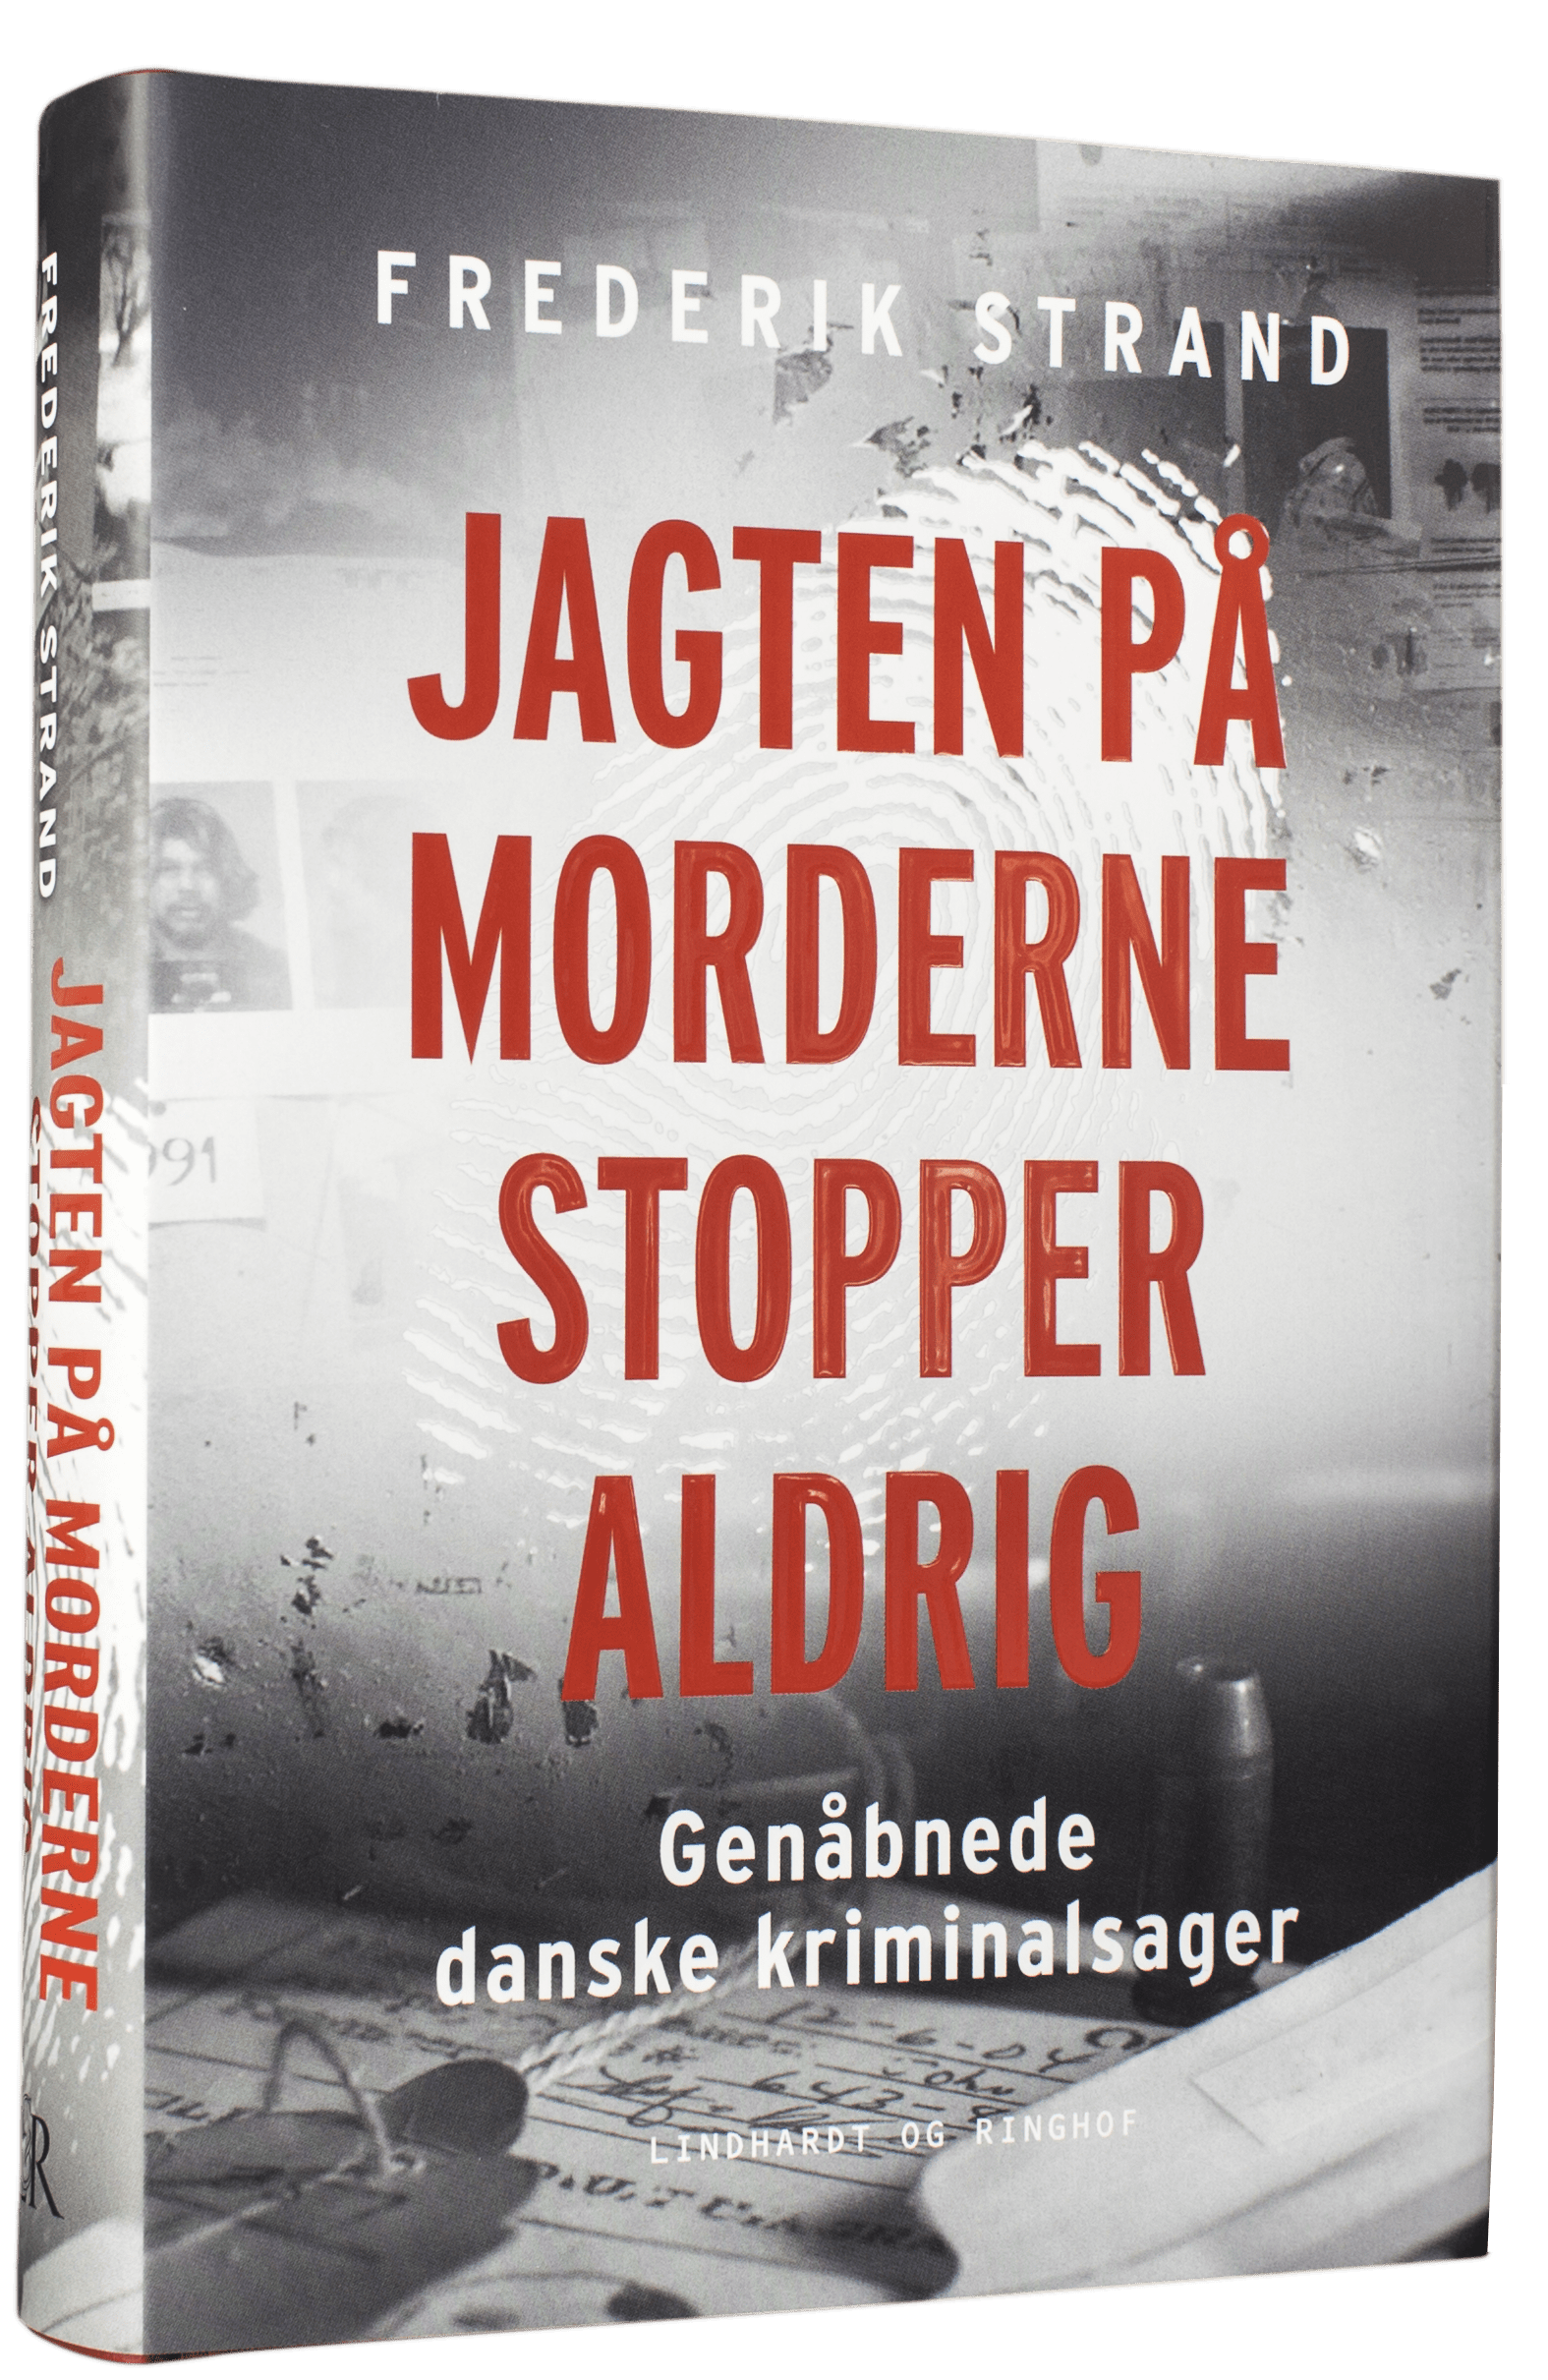 Jagten på morderne stopper aldrig, genåbnede danske kriminalsager, Frederik Strand, true crime, dansk efterforskning